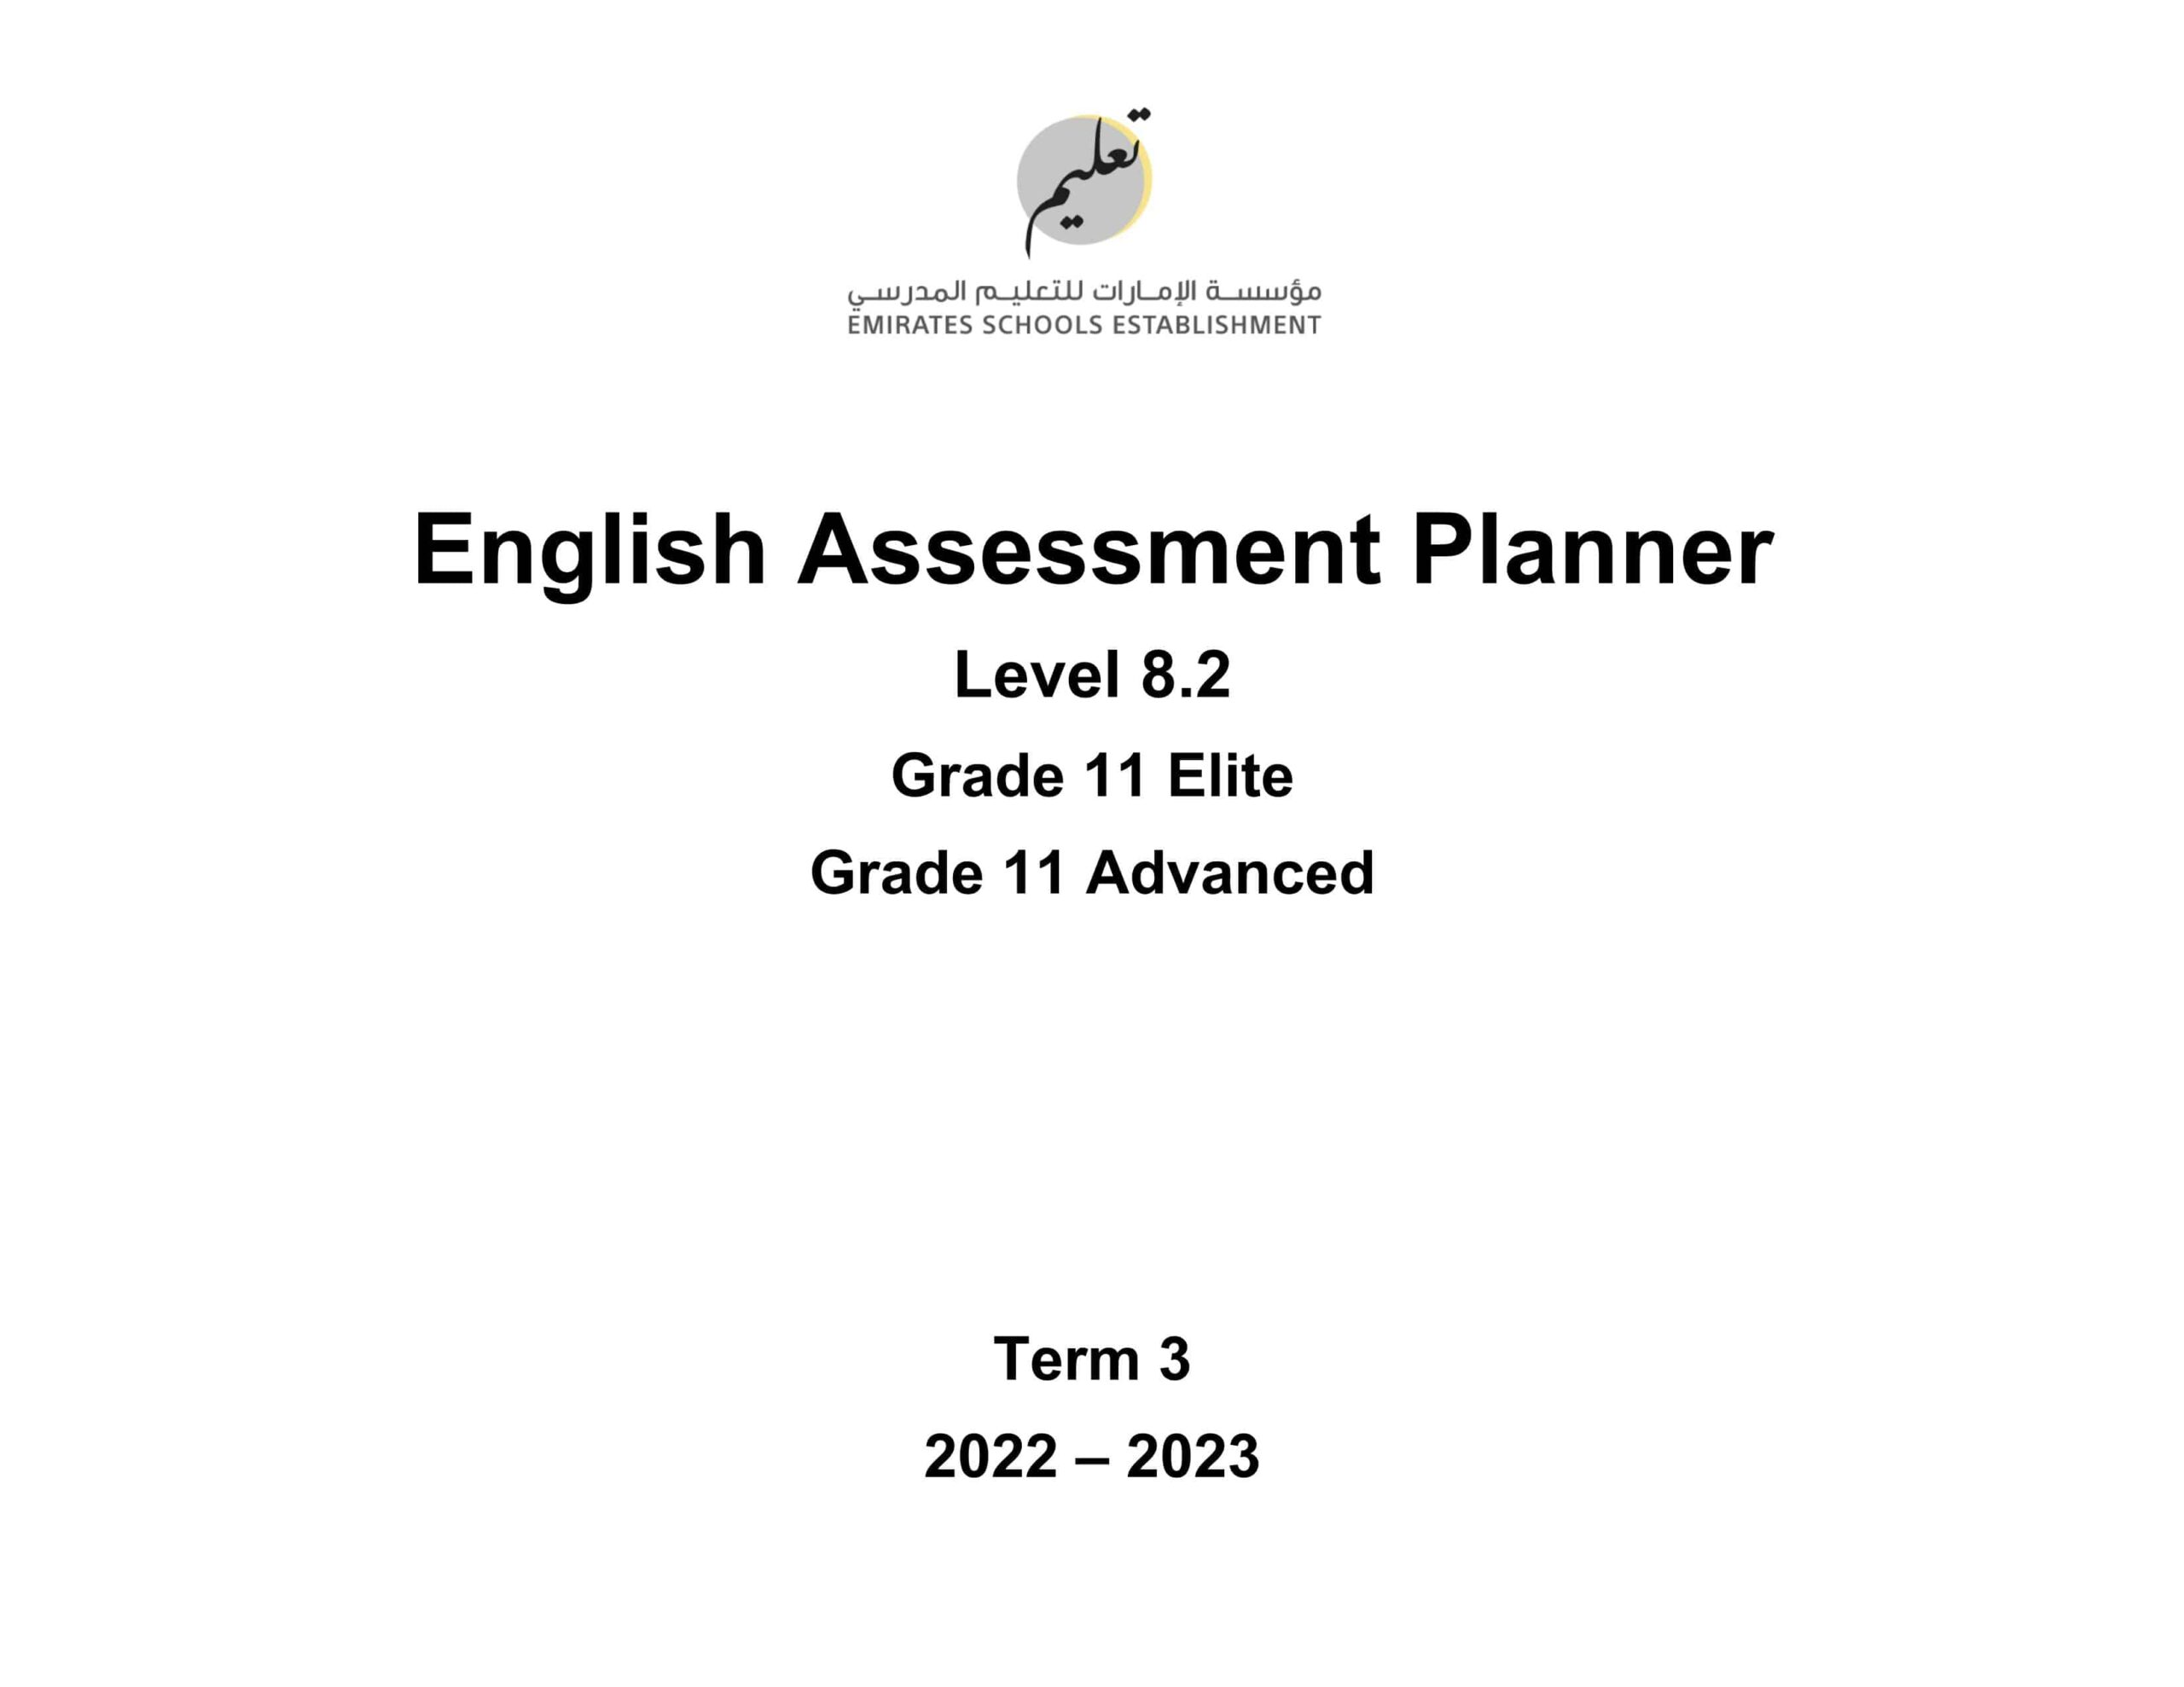 Assessment Planner اللغة الإنجليزية الصف الصف الحادي عشر Advanced & Elite الفصل الدراسي الثالث 2022-2023